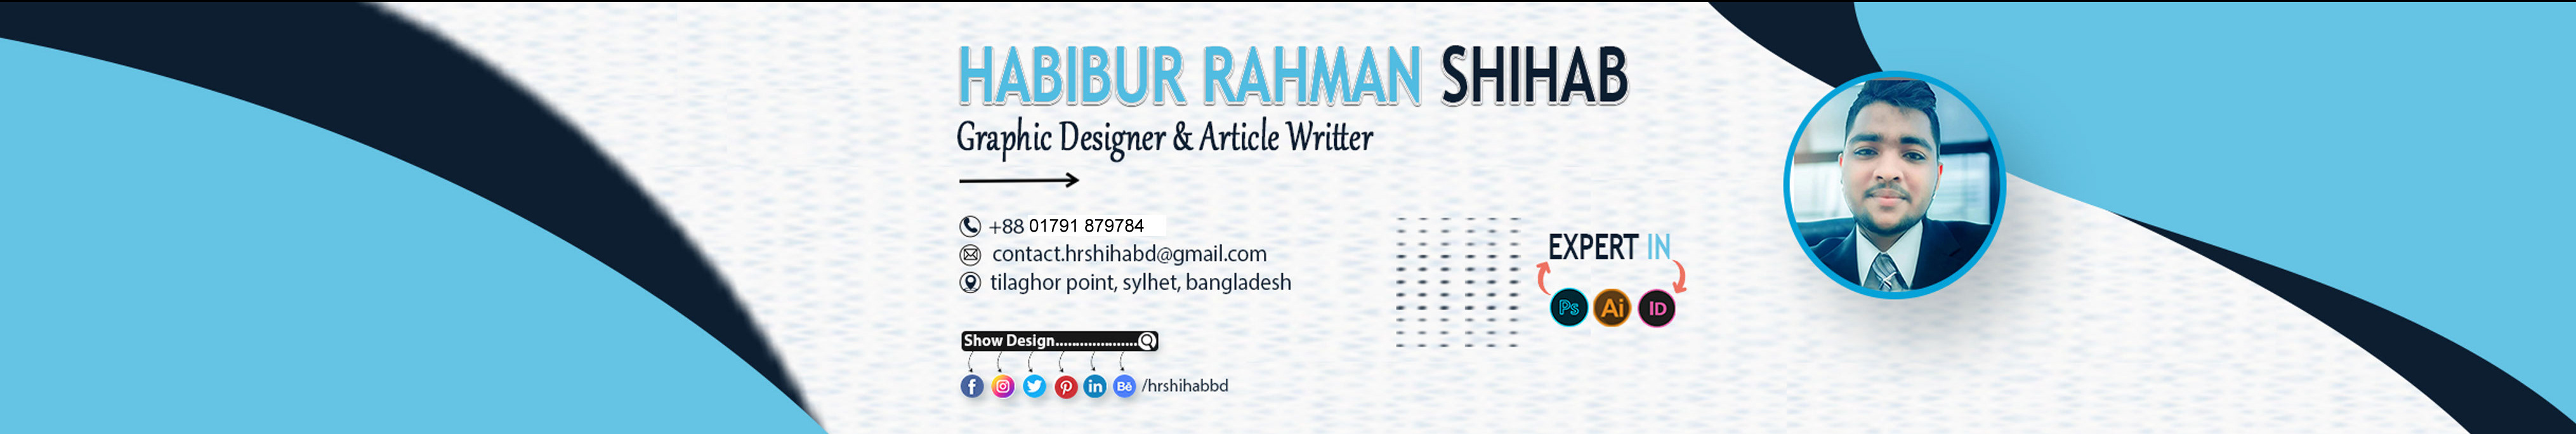 Profil-Banner von Habibur Rahman Shihab